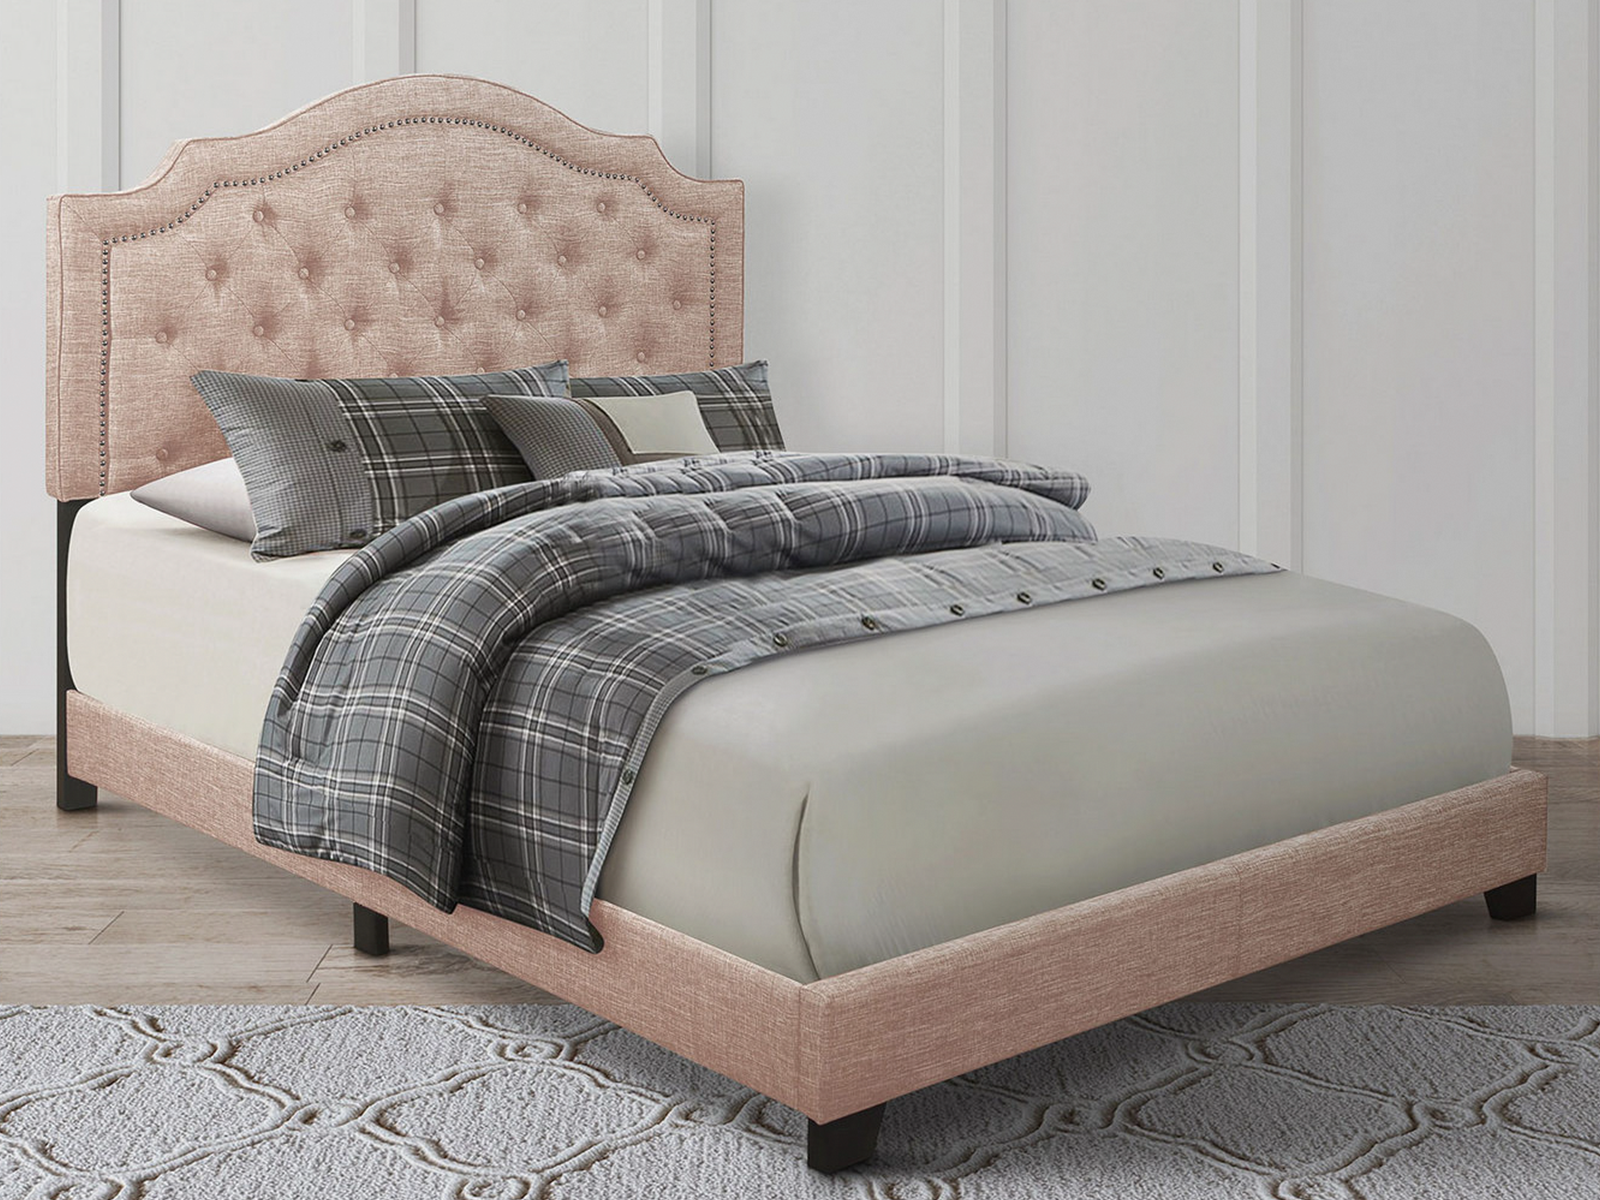 Homelegance Upholstered Bed Set | Full | Harley Bed Frame & Headboard | Beige